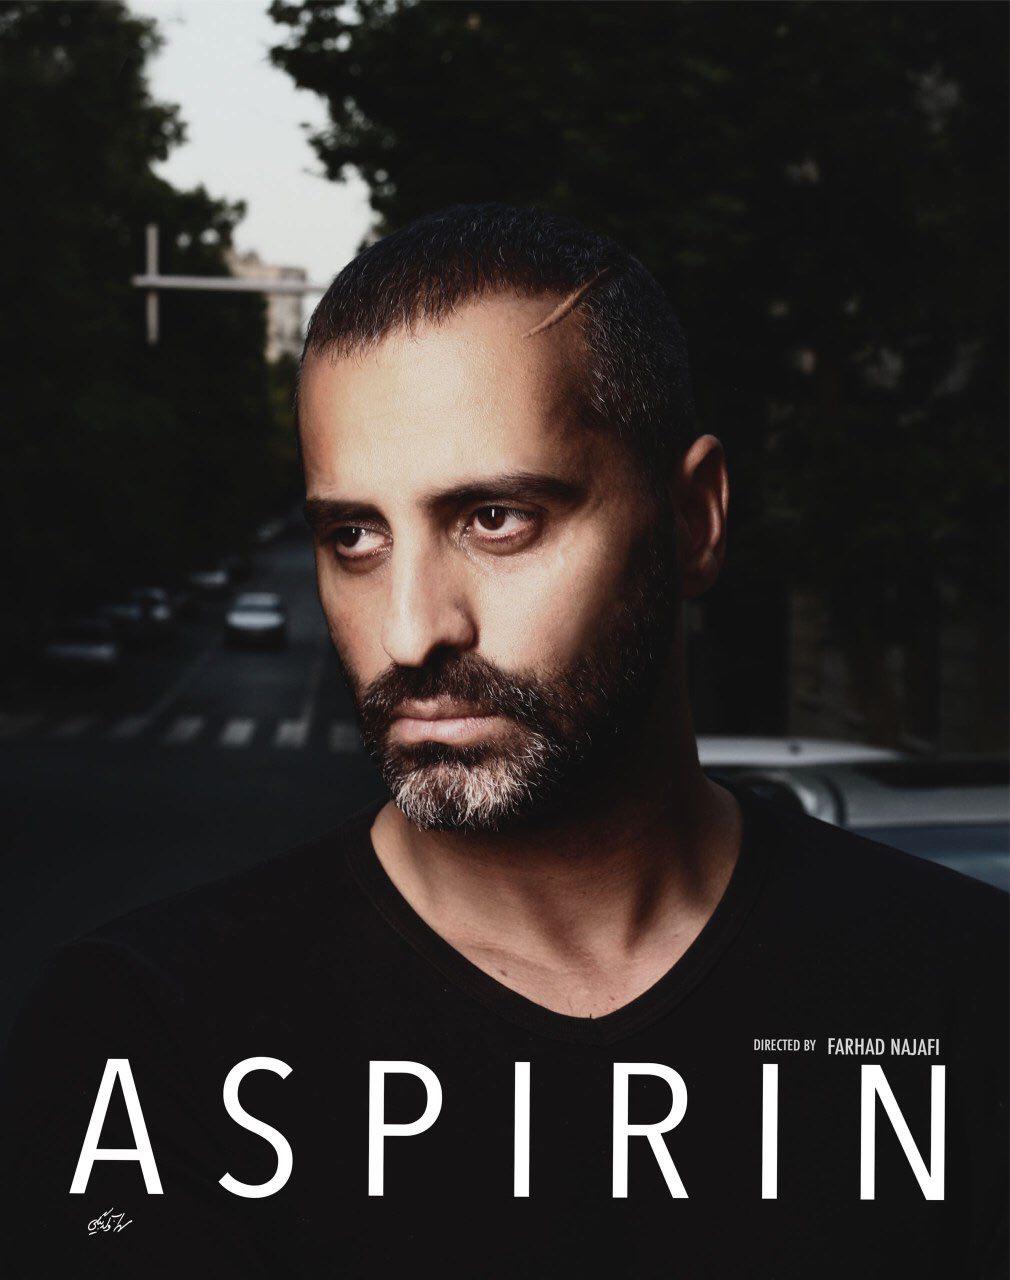 علیرام نورایی در پوستر سریال شبکه نمایش خانگی آسپرین